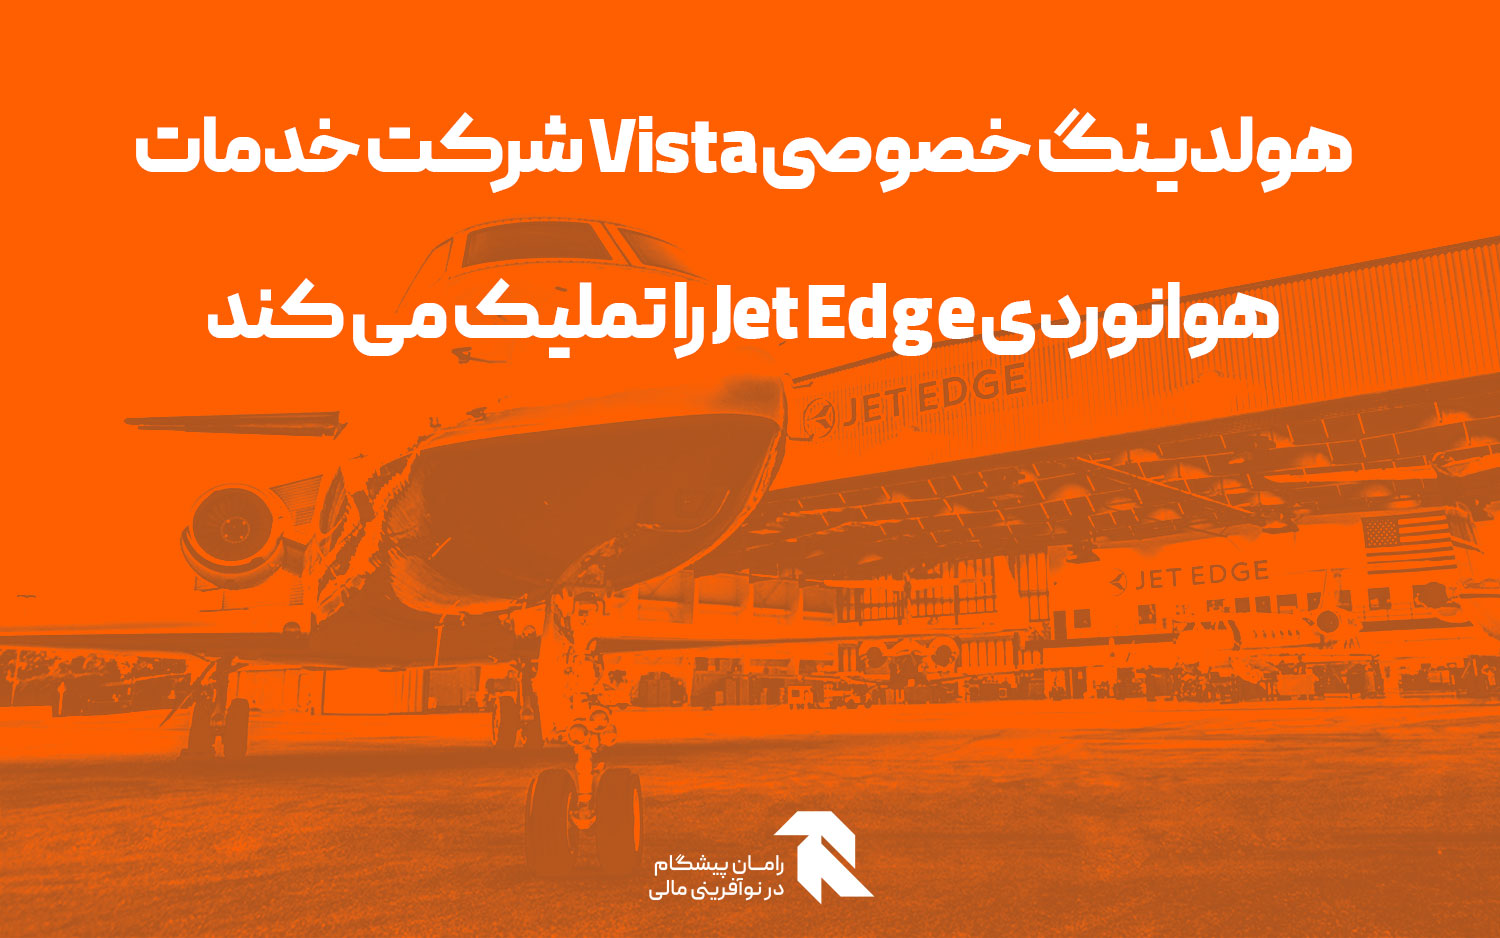 هولدینگ خصوصی Vista شرکت خدمات هوانوردی Jet Edge را تملیک می کند